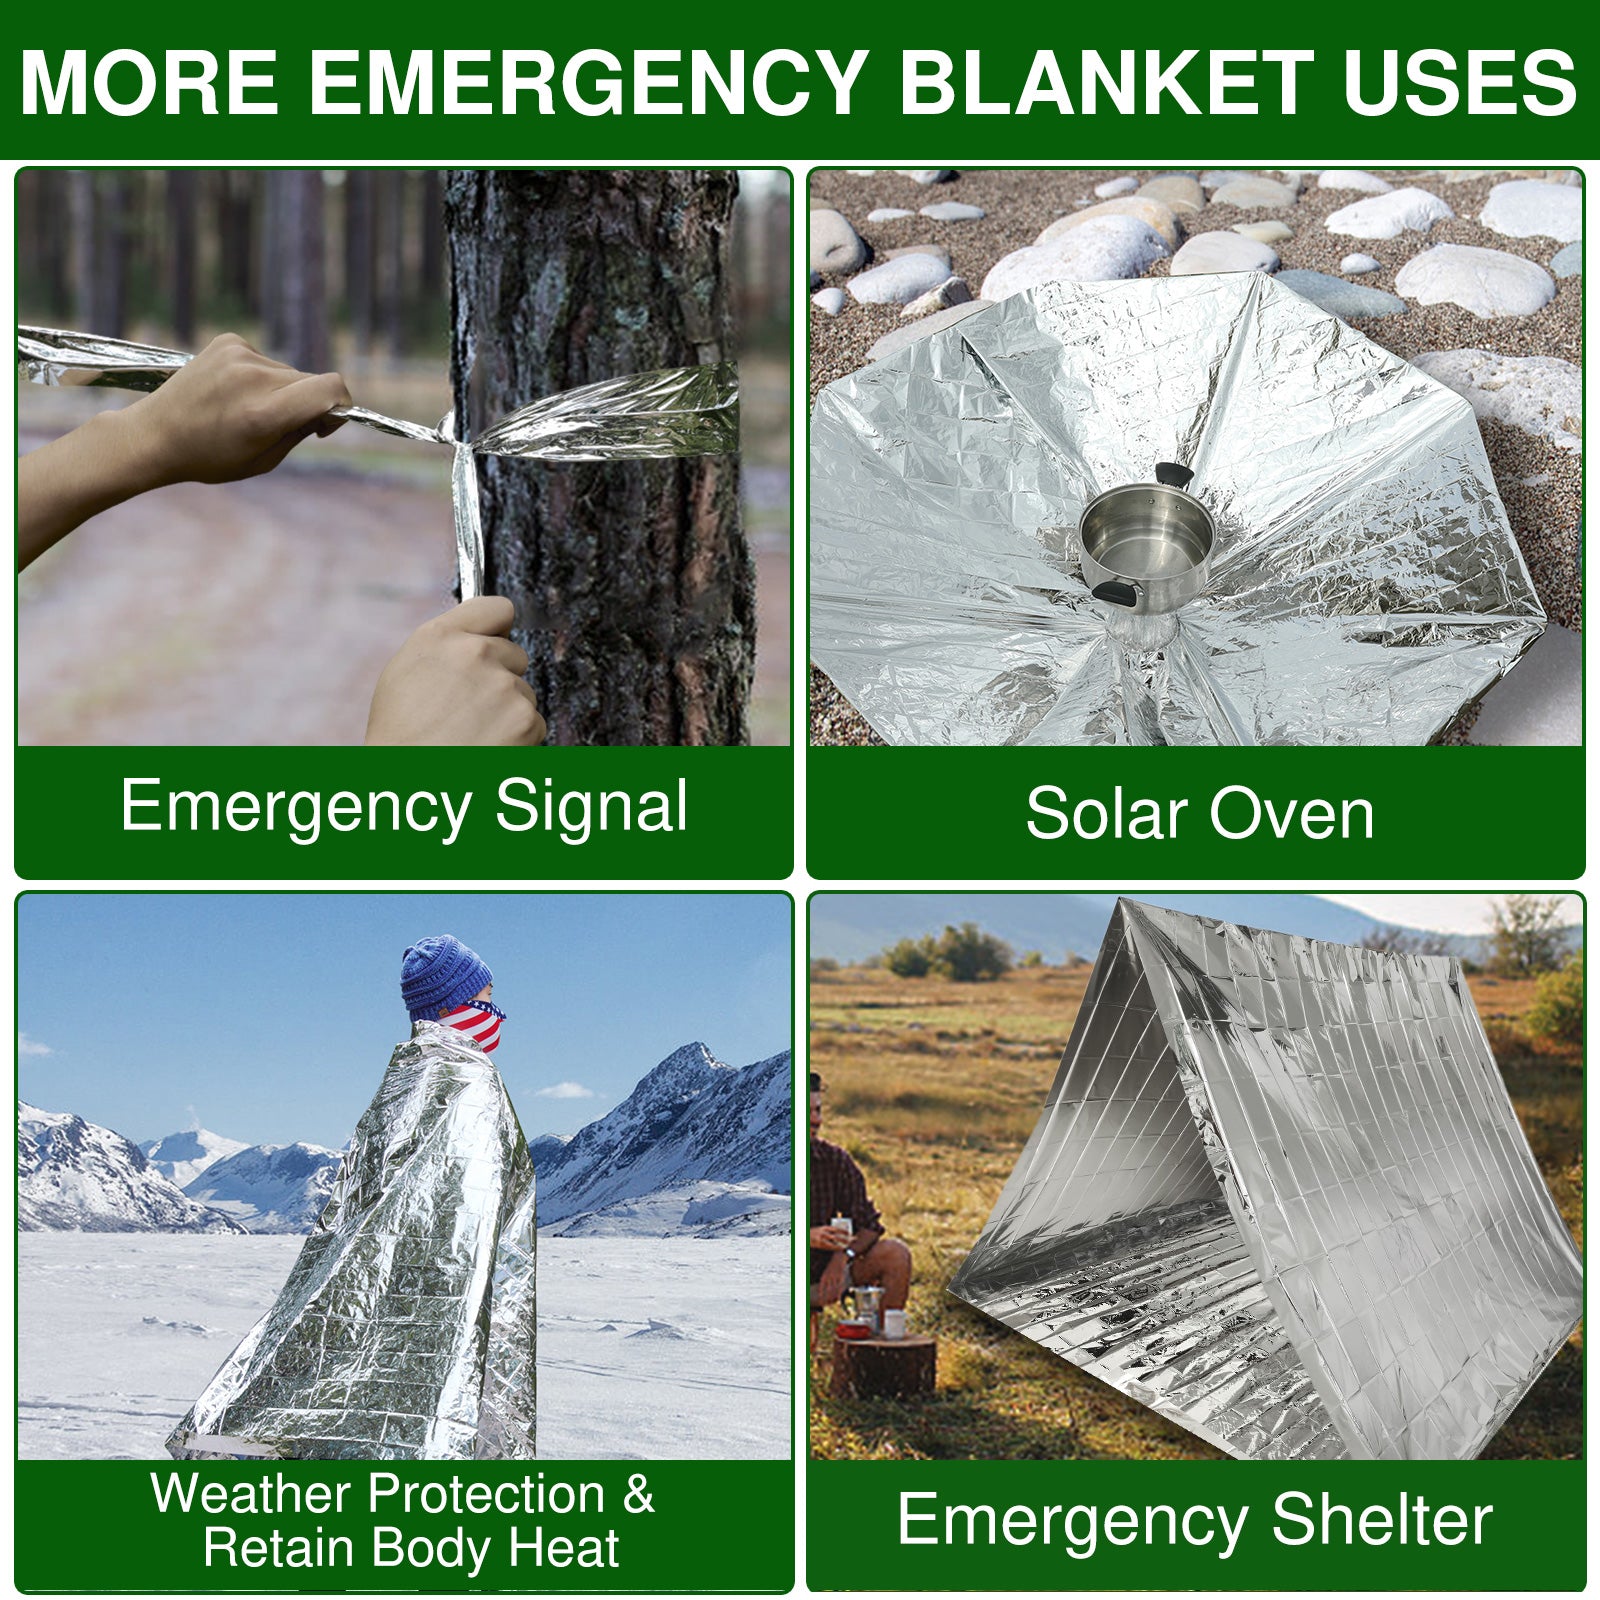 more emergency blanket uses